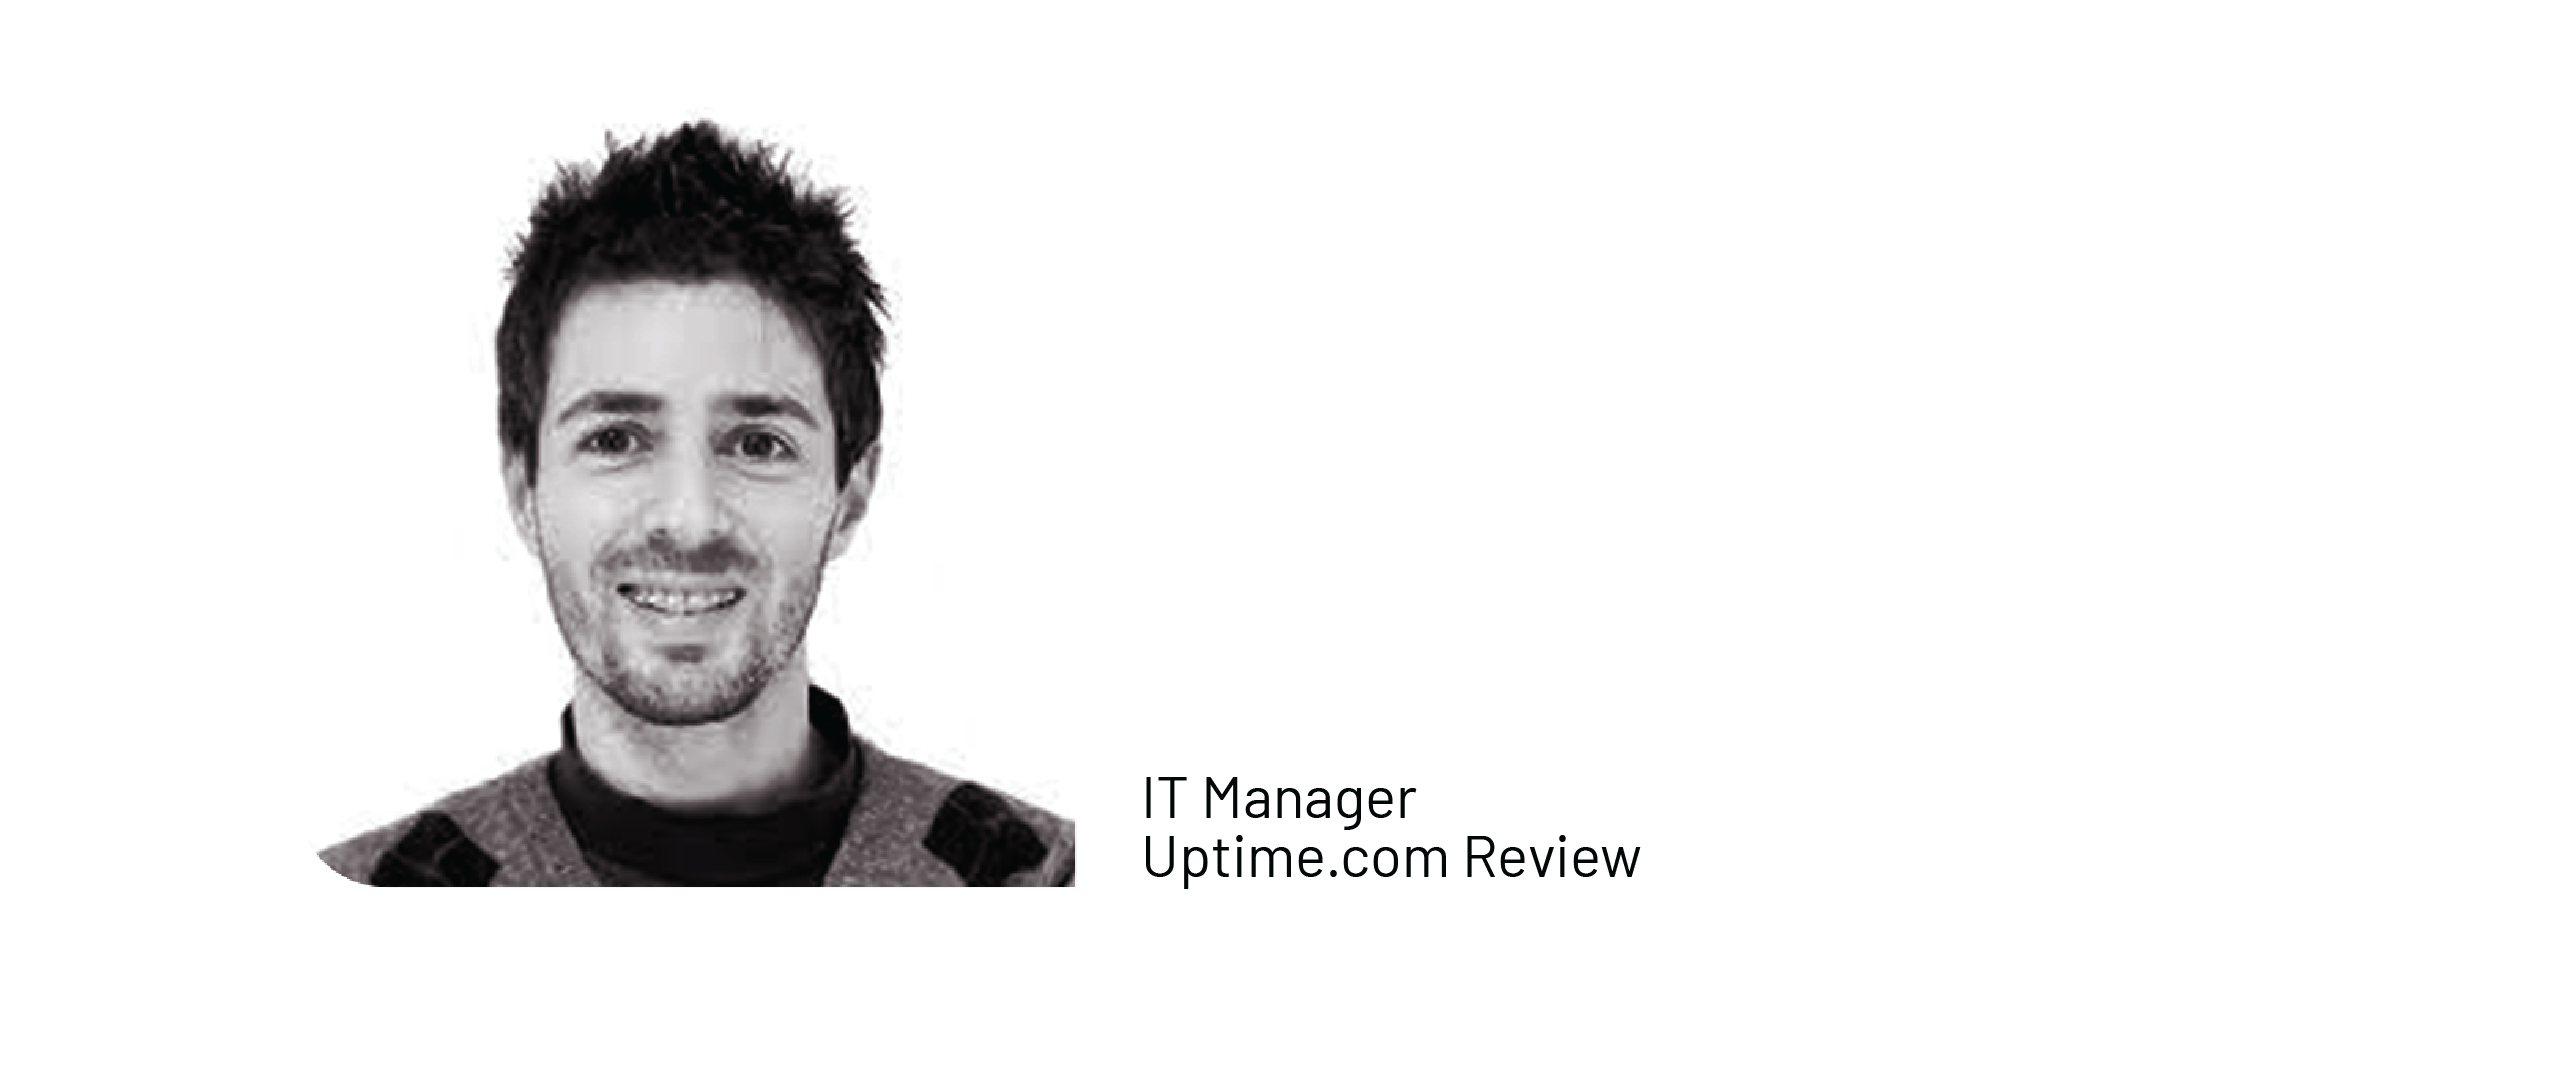 Matteo Uptime.com Review